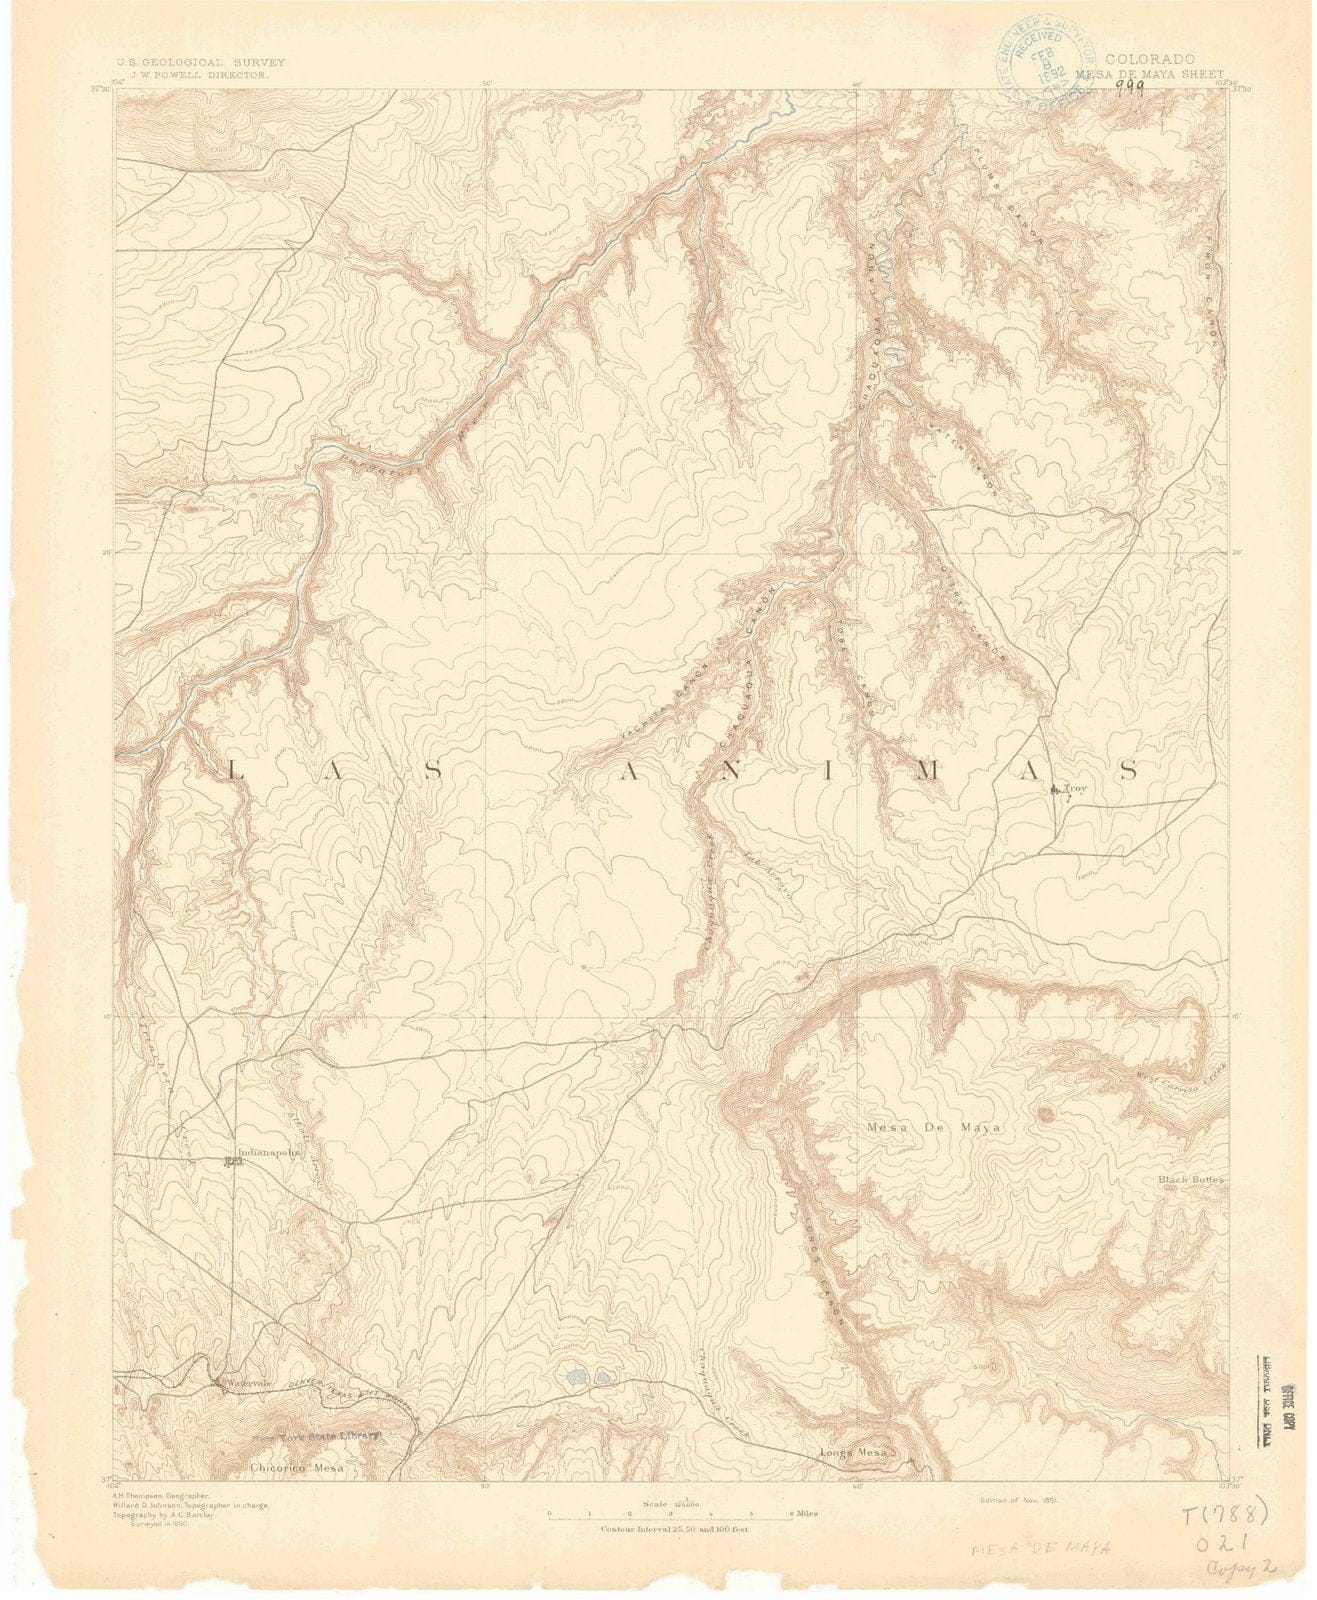 1891 Mesae Maya, CO - Colorado - USGS Topographic Map